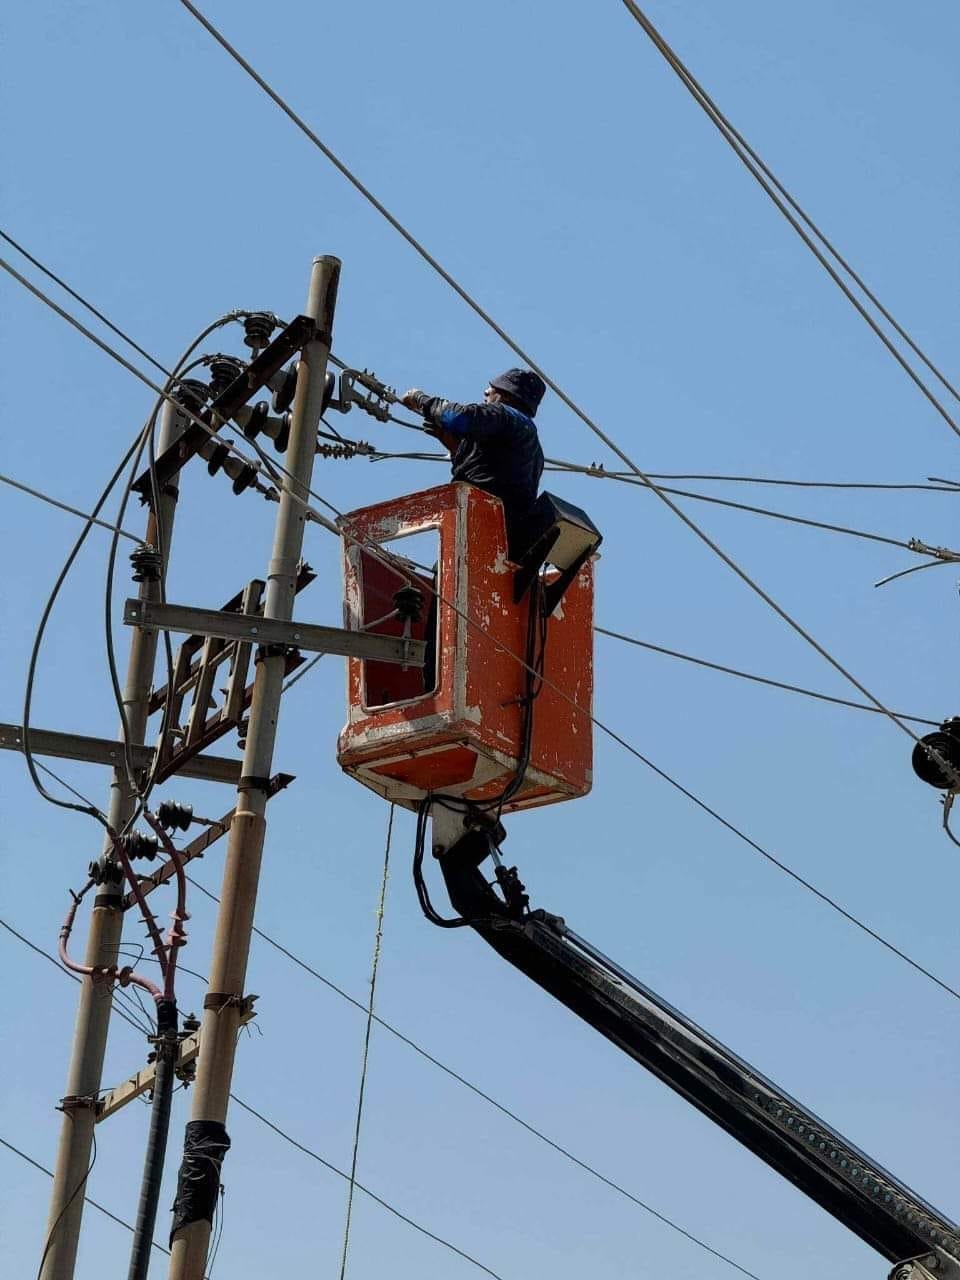 الكهرباء تعلن إعفاء 10 مسؤولين وتكشف عن حملة كبرى لرفع مليون تجاوز